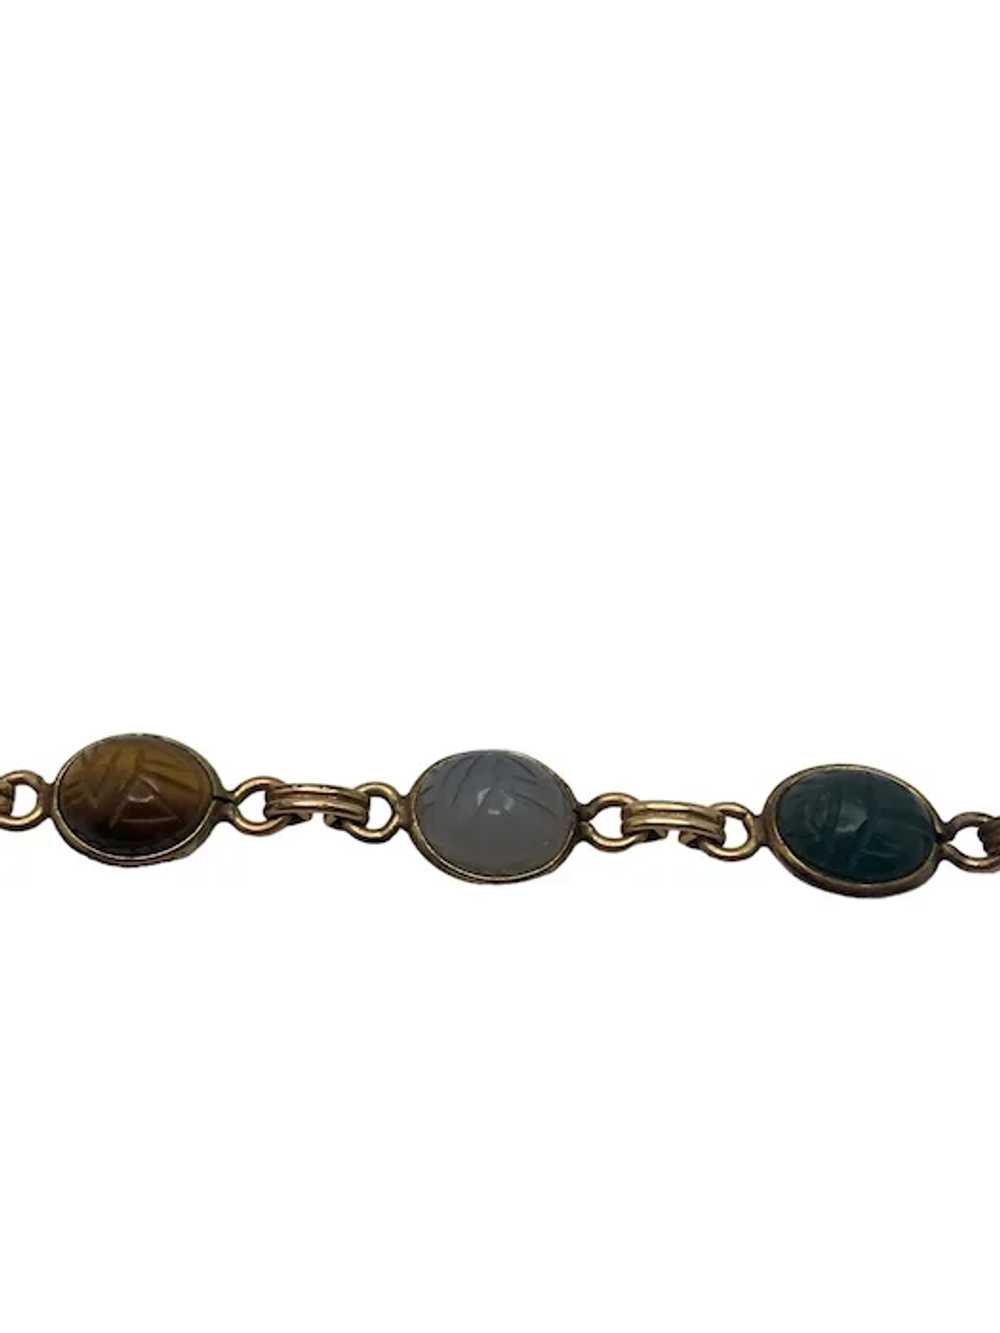 Vintage 12k Gold Filled Scarab Bracelet - image 10